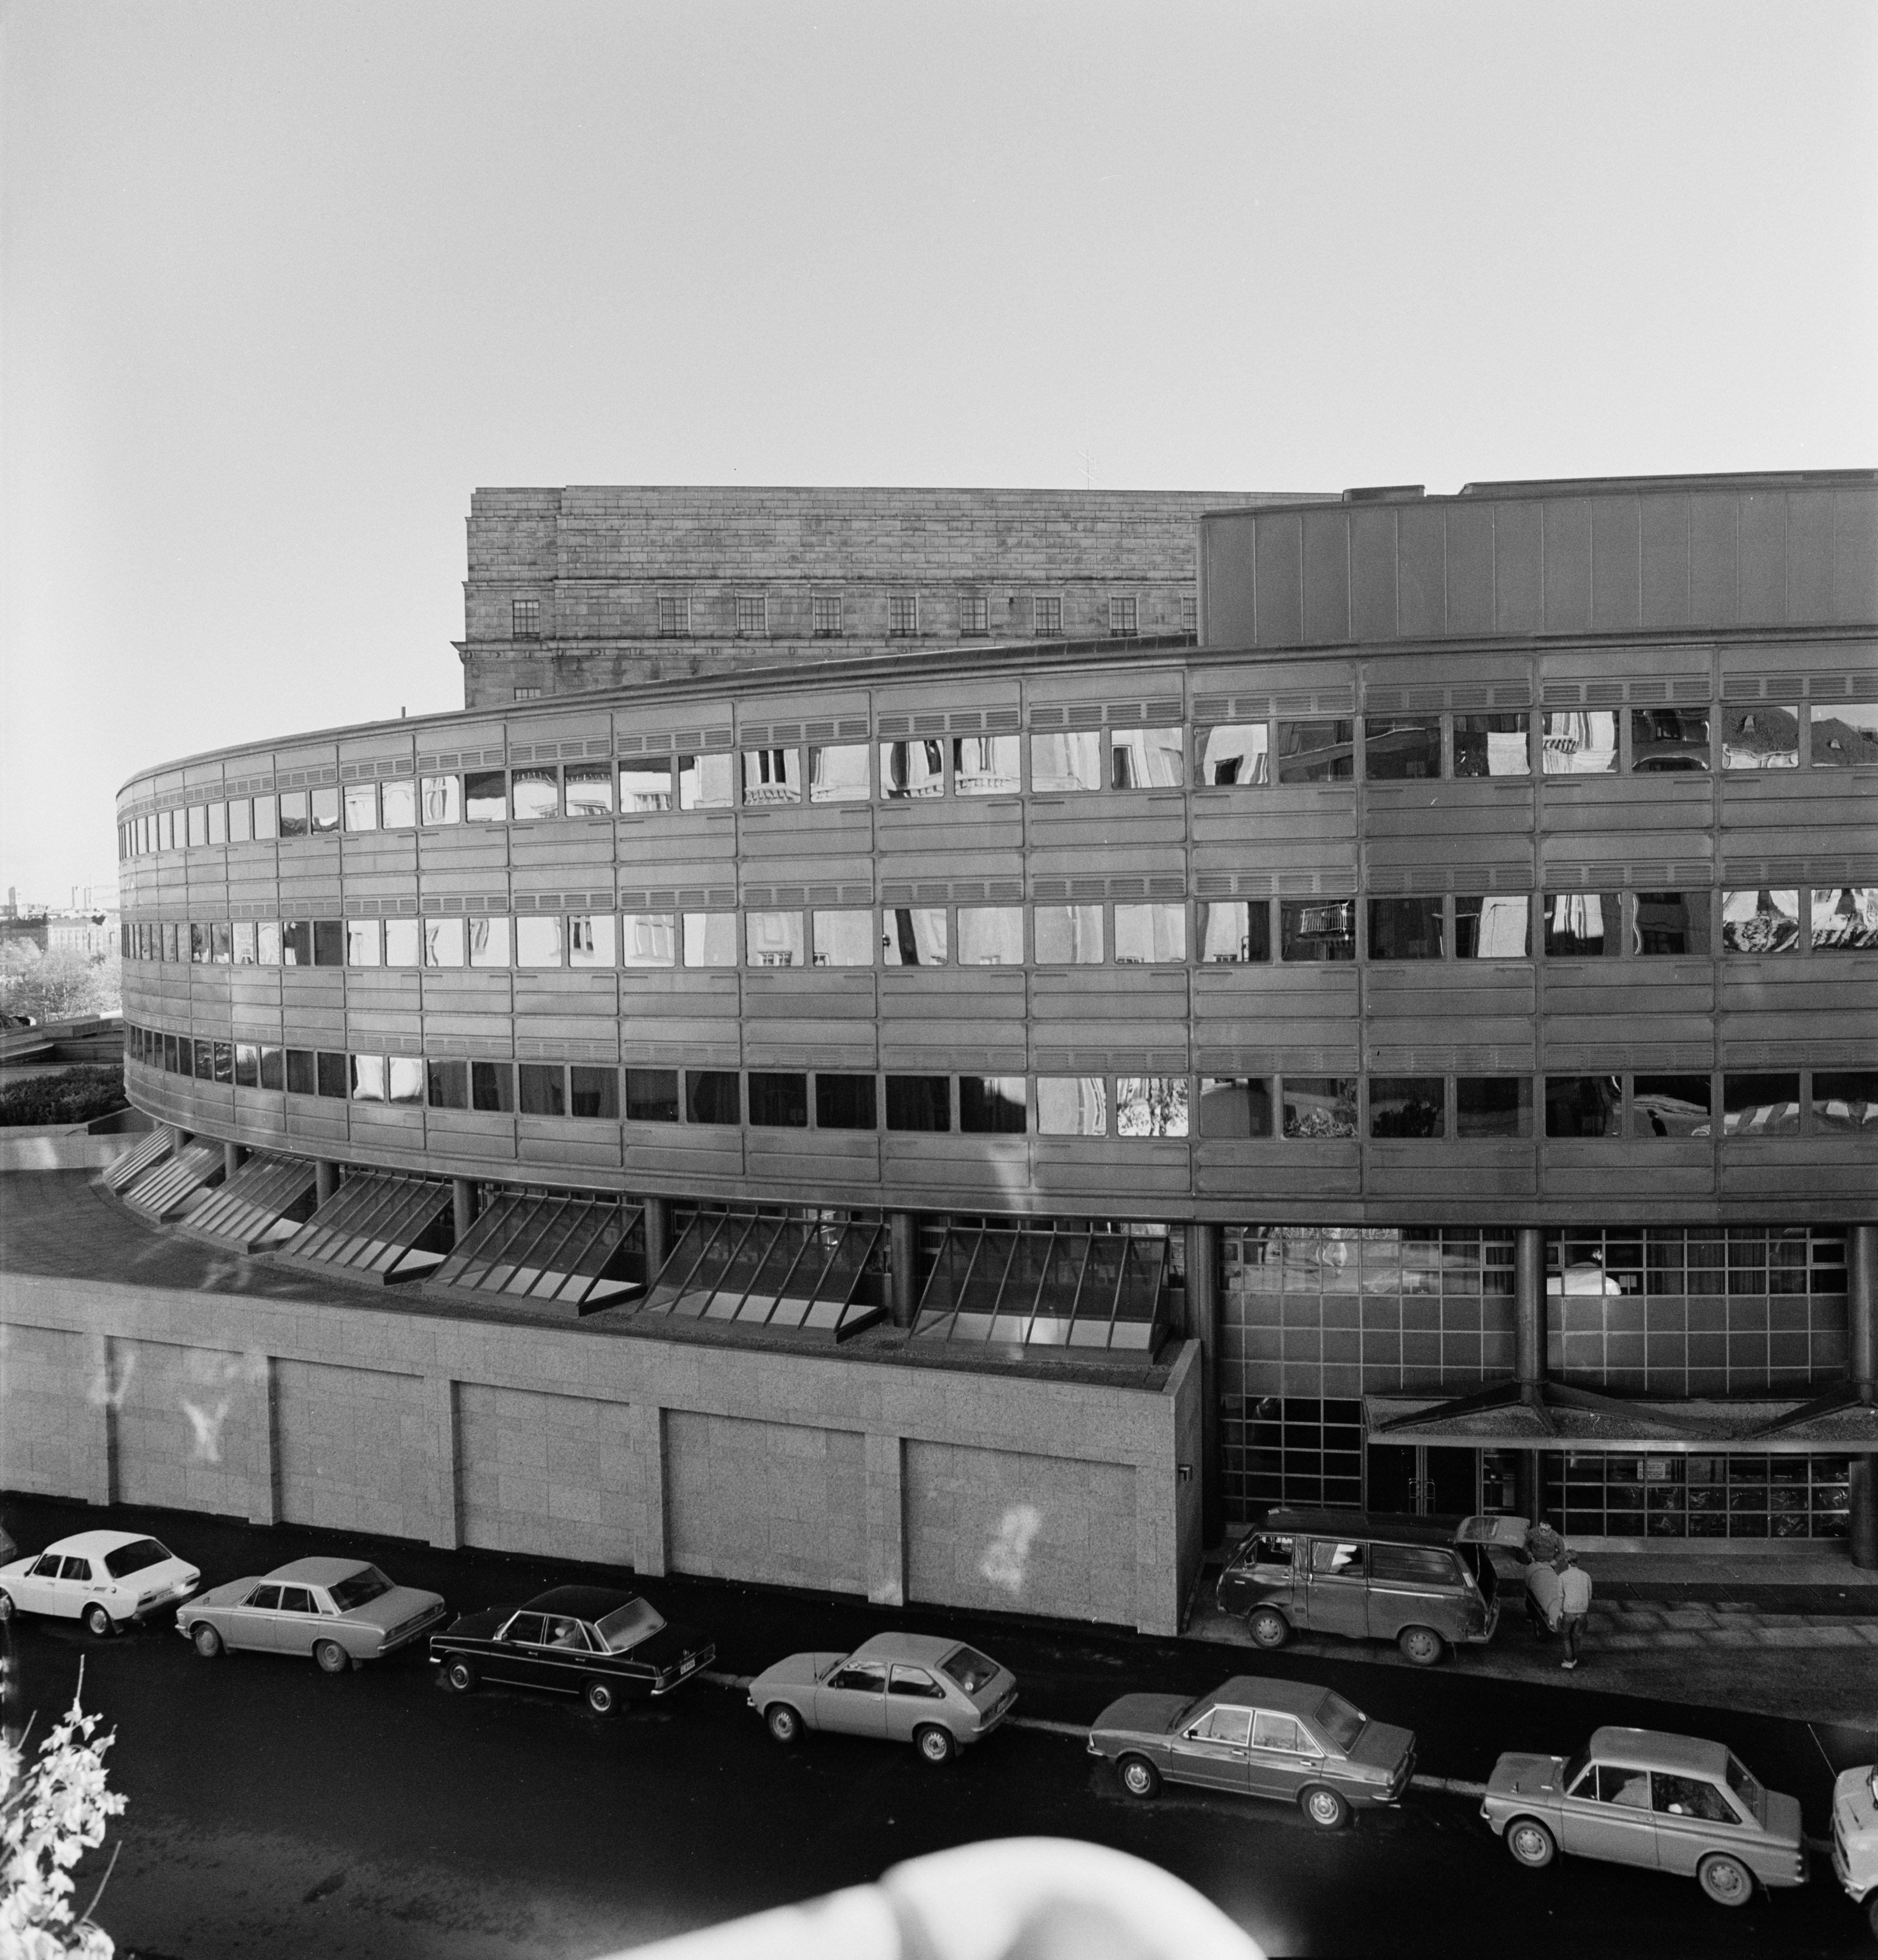 Eduskuntatalon laajennusosa, Aurorankatu 6. 1970. Arkkitehtitoimisto Pitkänen, Laiho & Raunion suunnittelema kolmiosainen laajennus valmistui vuonna 1978.[